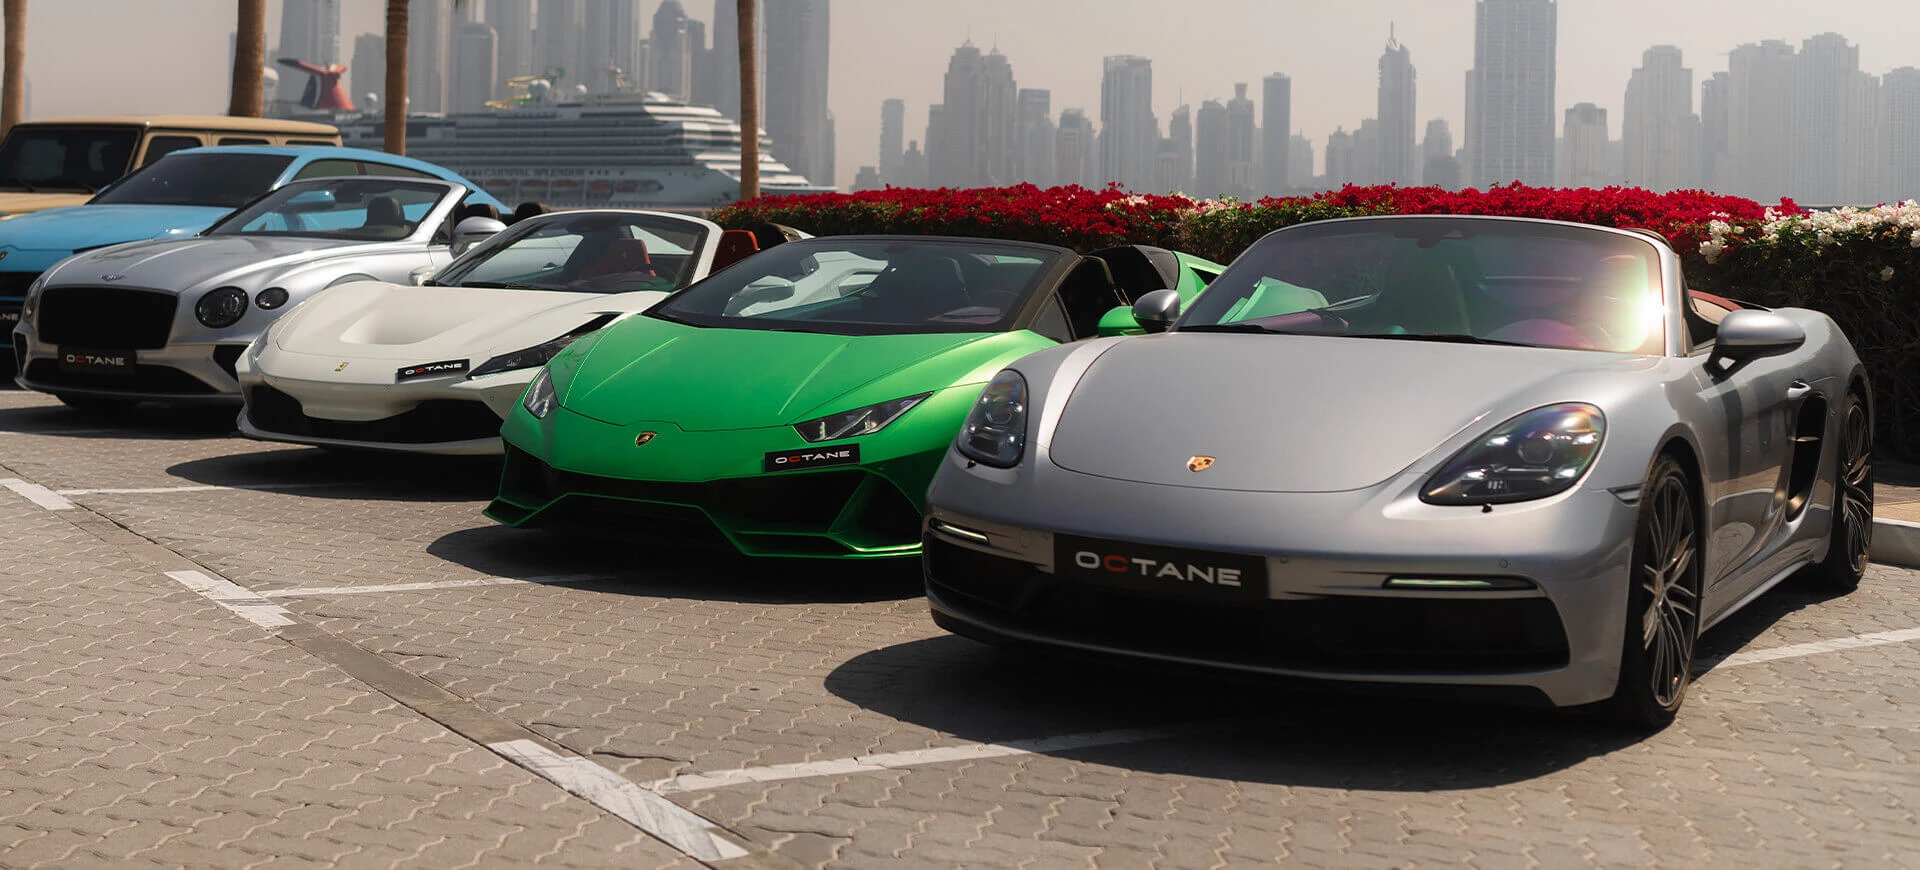 Louer une voiture décapotable à Dubaï